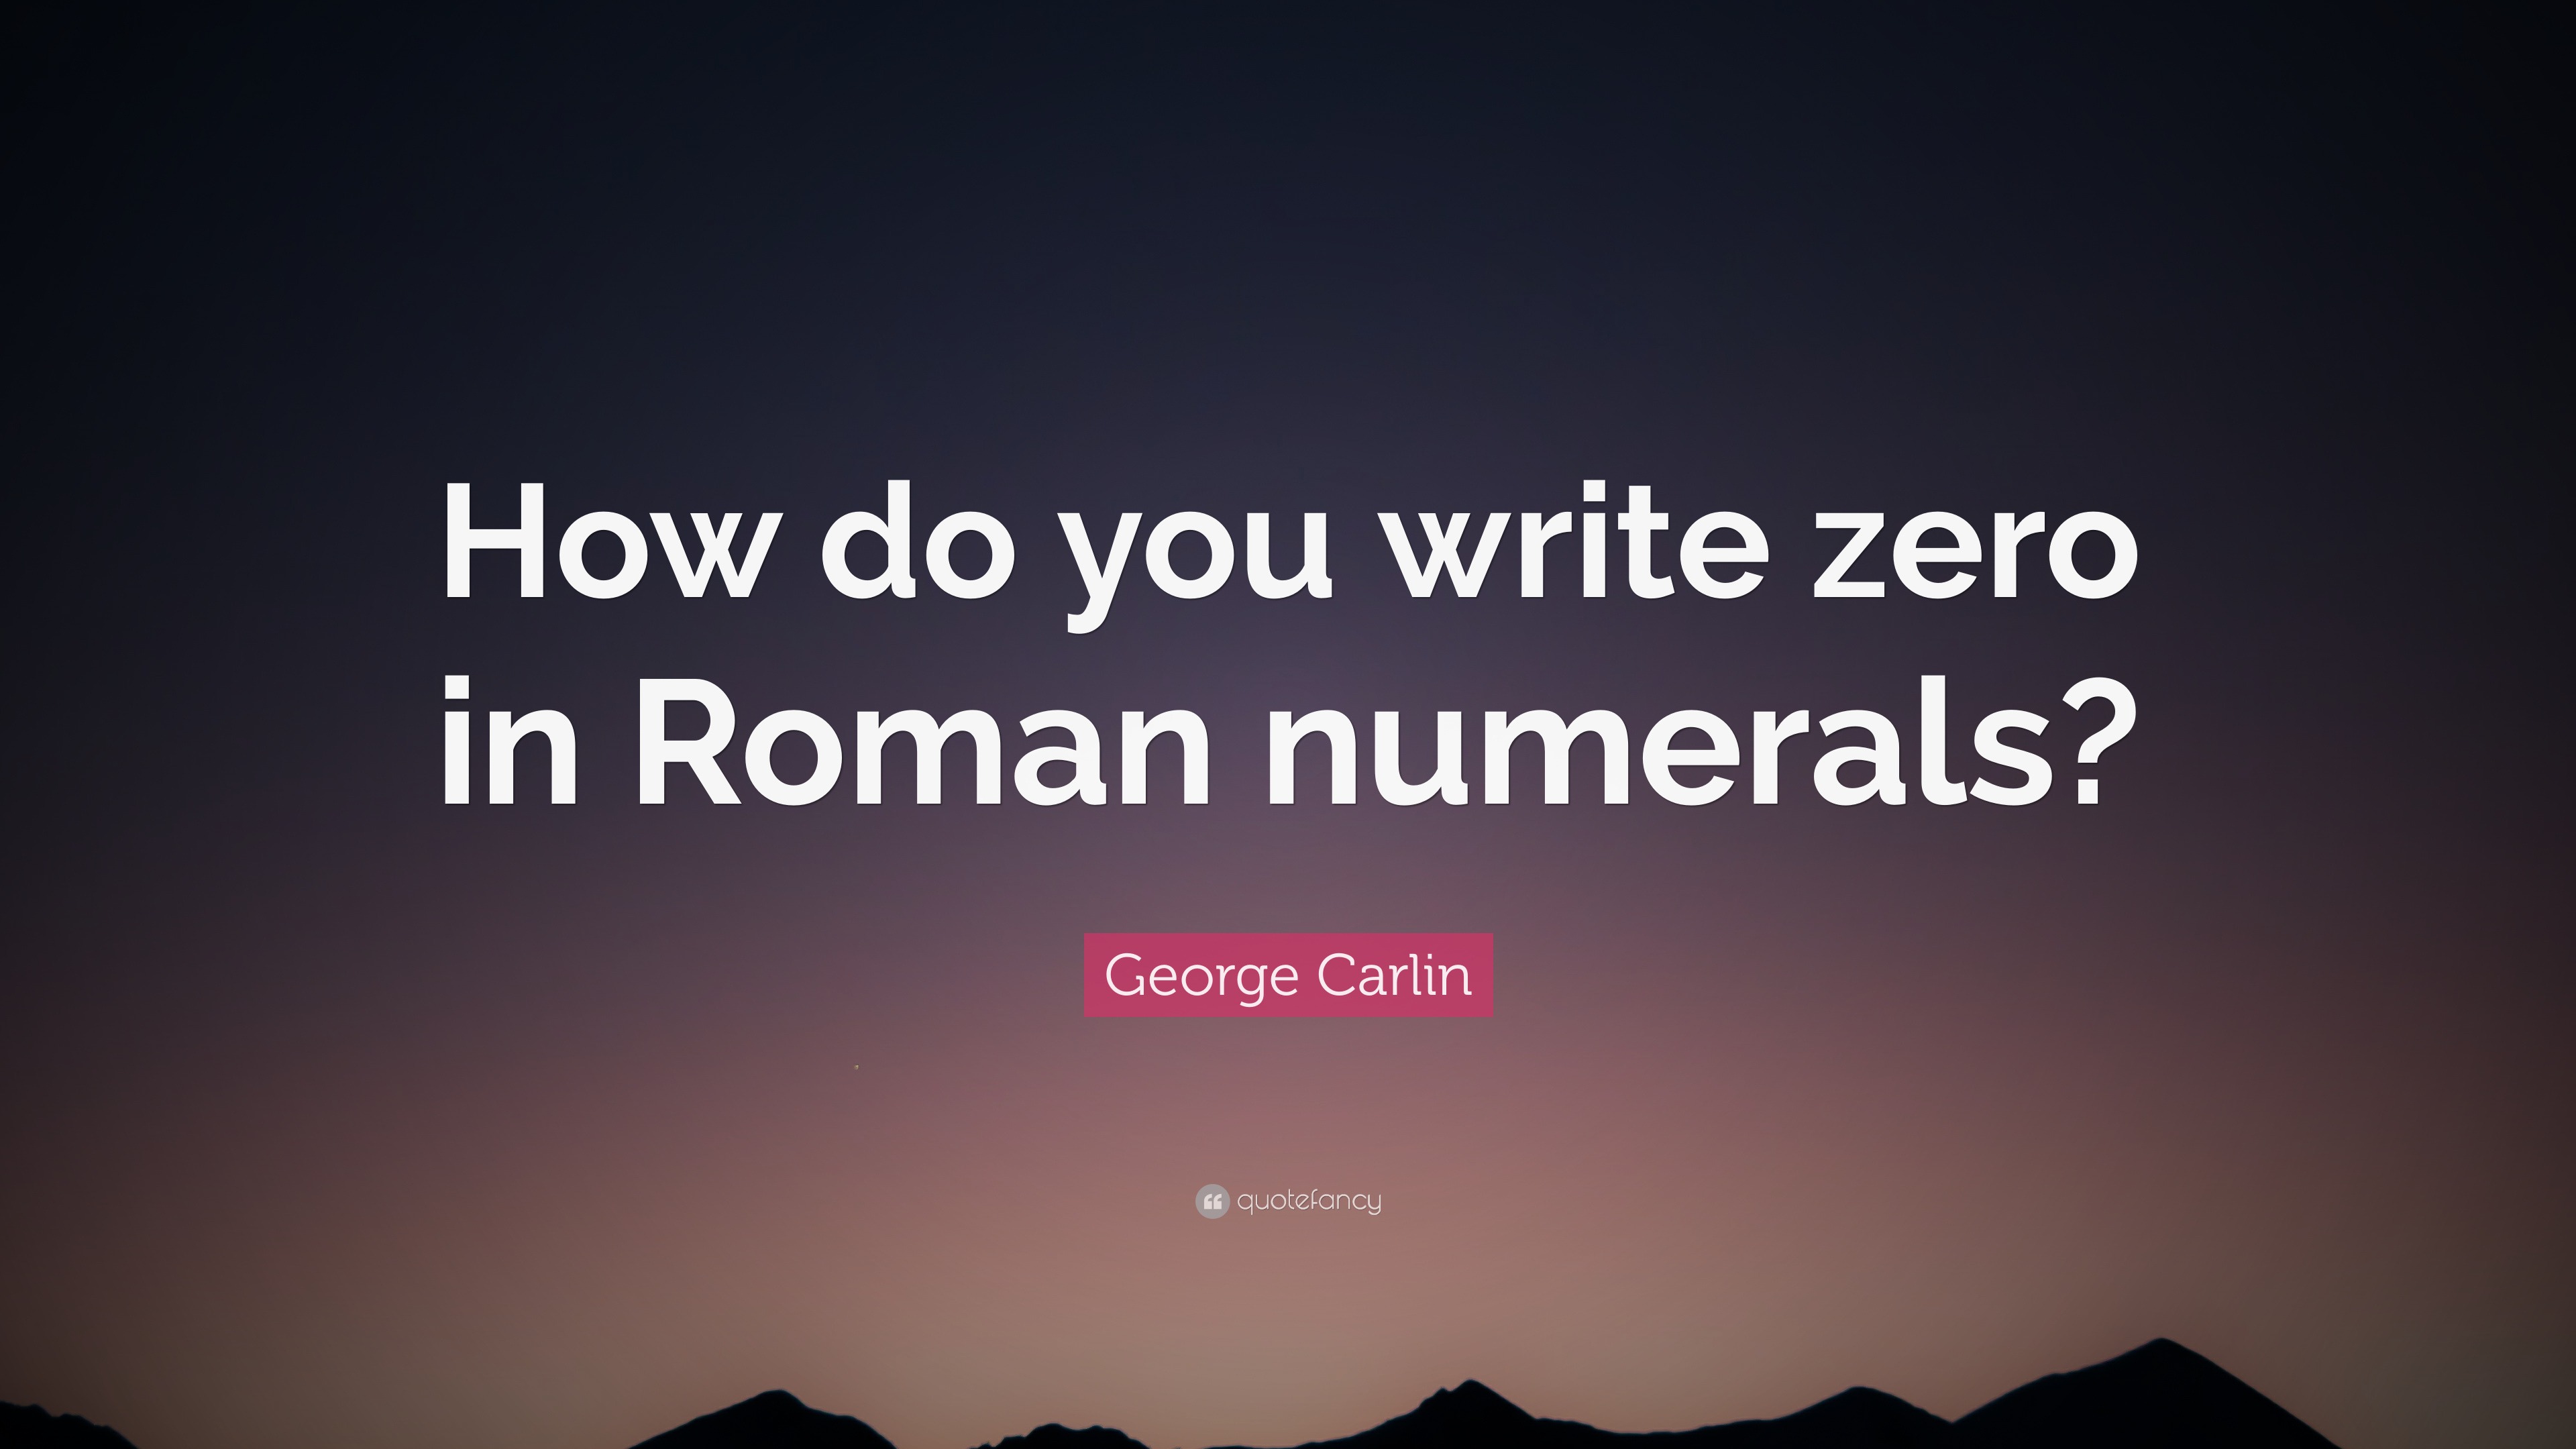 George Carlin Quote: “How do you write zero in Roman numerals?”